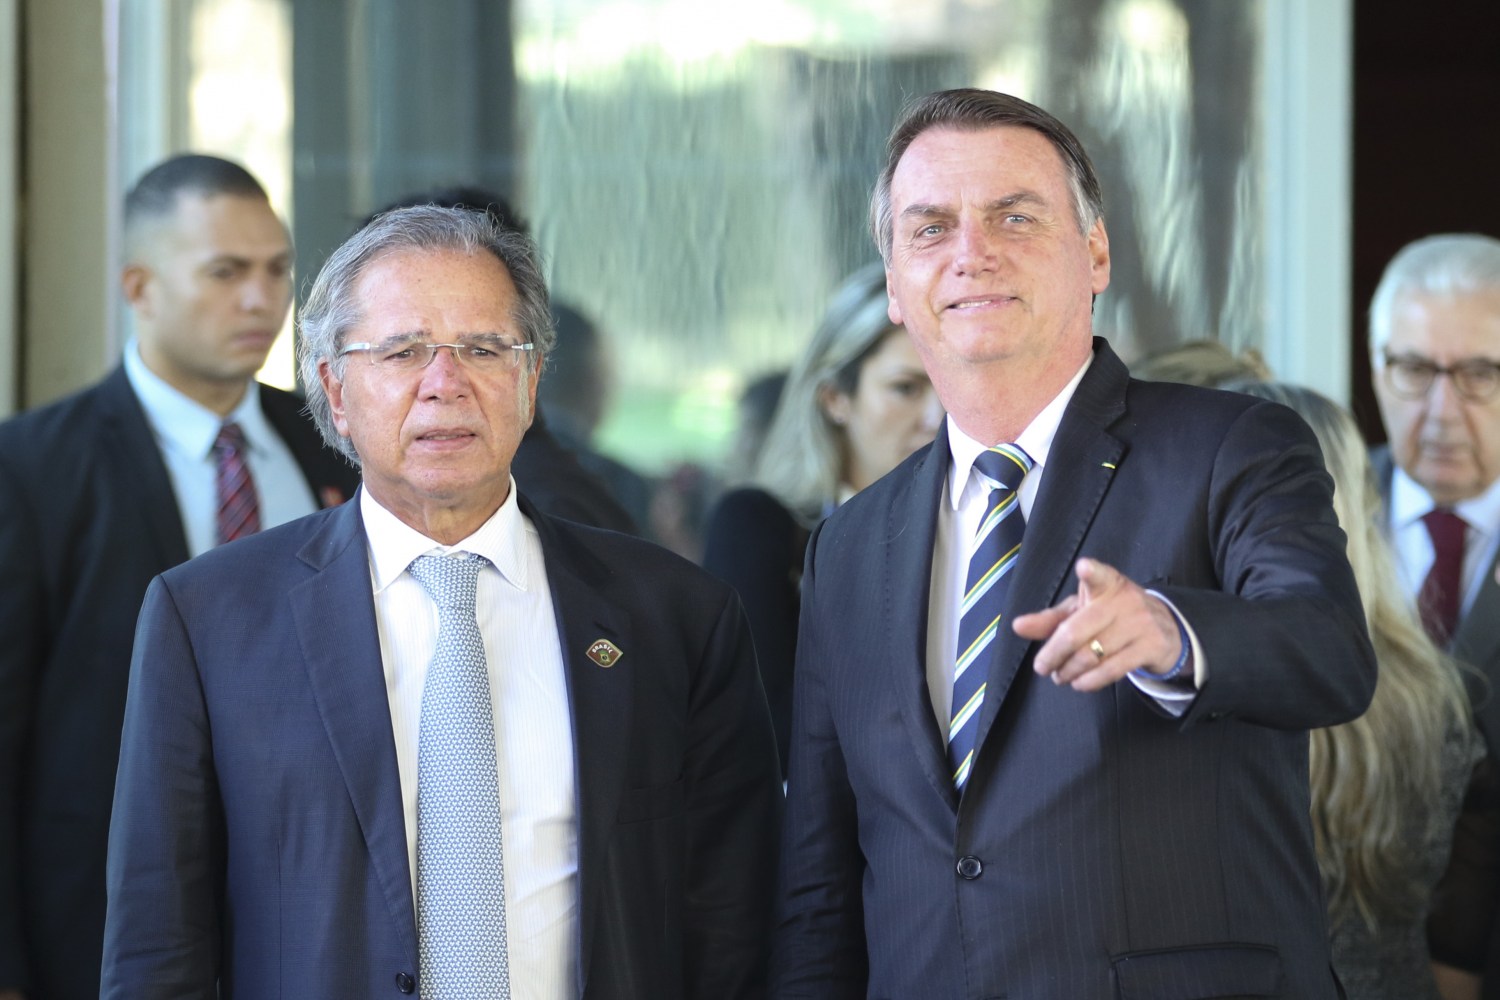 O presidente Jair Bolsonaro fala à imprensa após reunião com o ministro da Economia, Paulo Guedes, no ministério